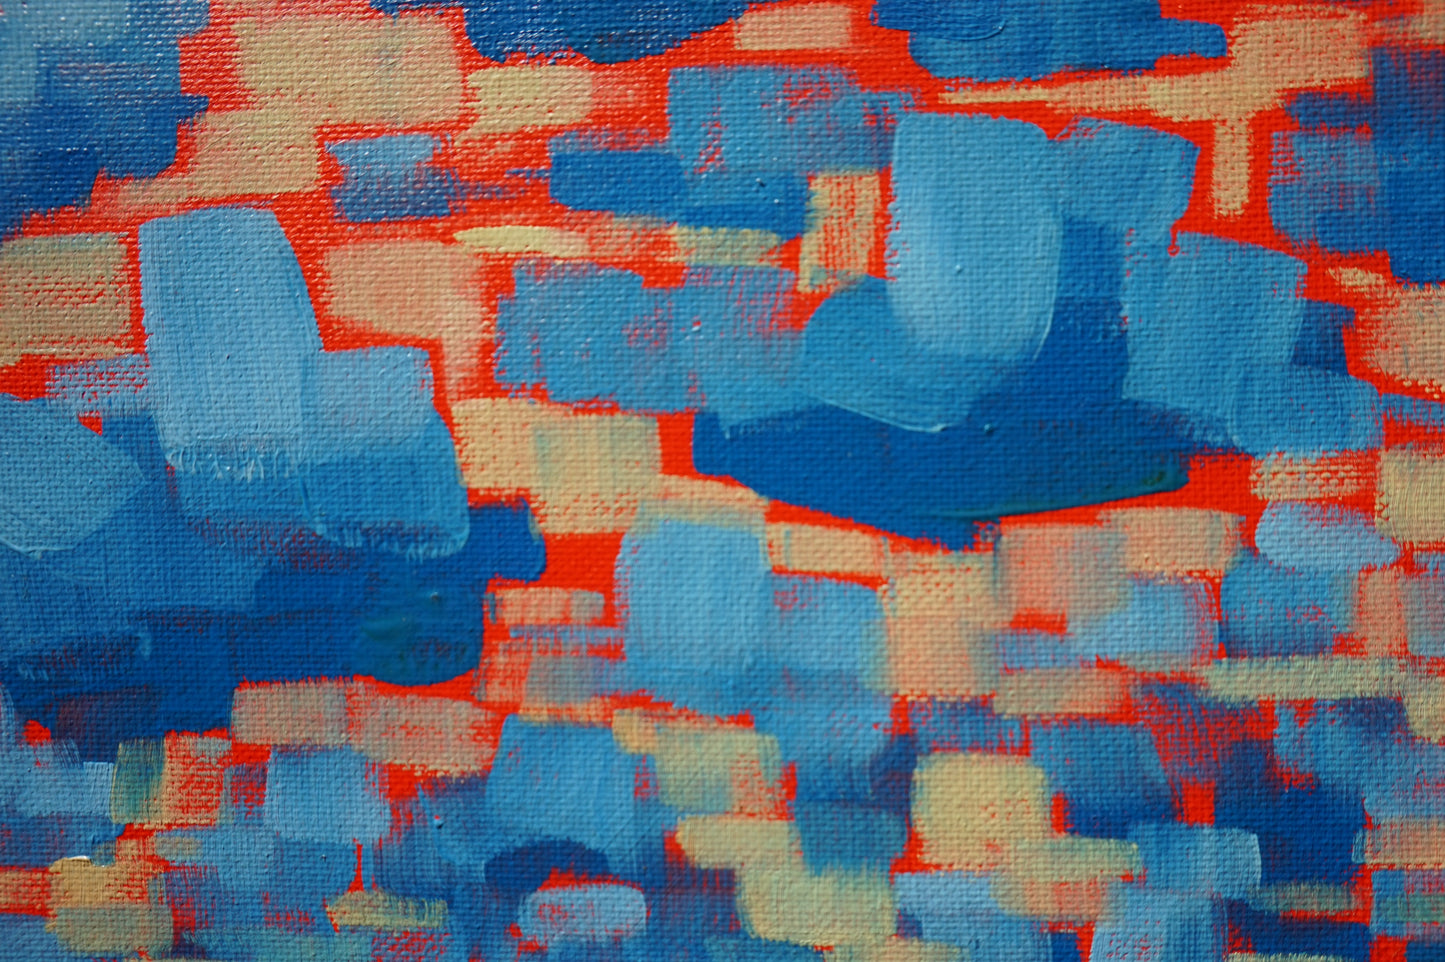 Broken sundown- 20x25.5cm / Oil painting on canvas panel